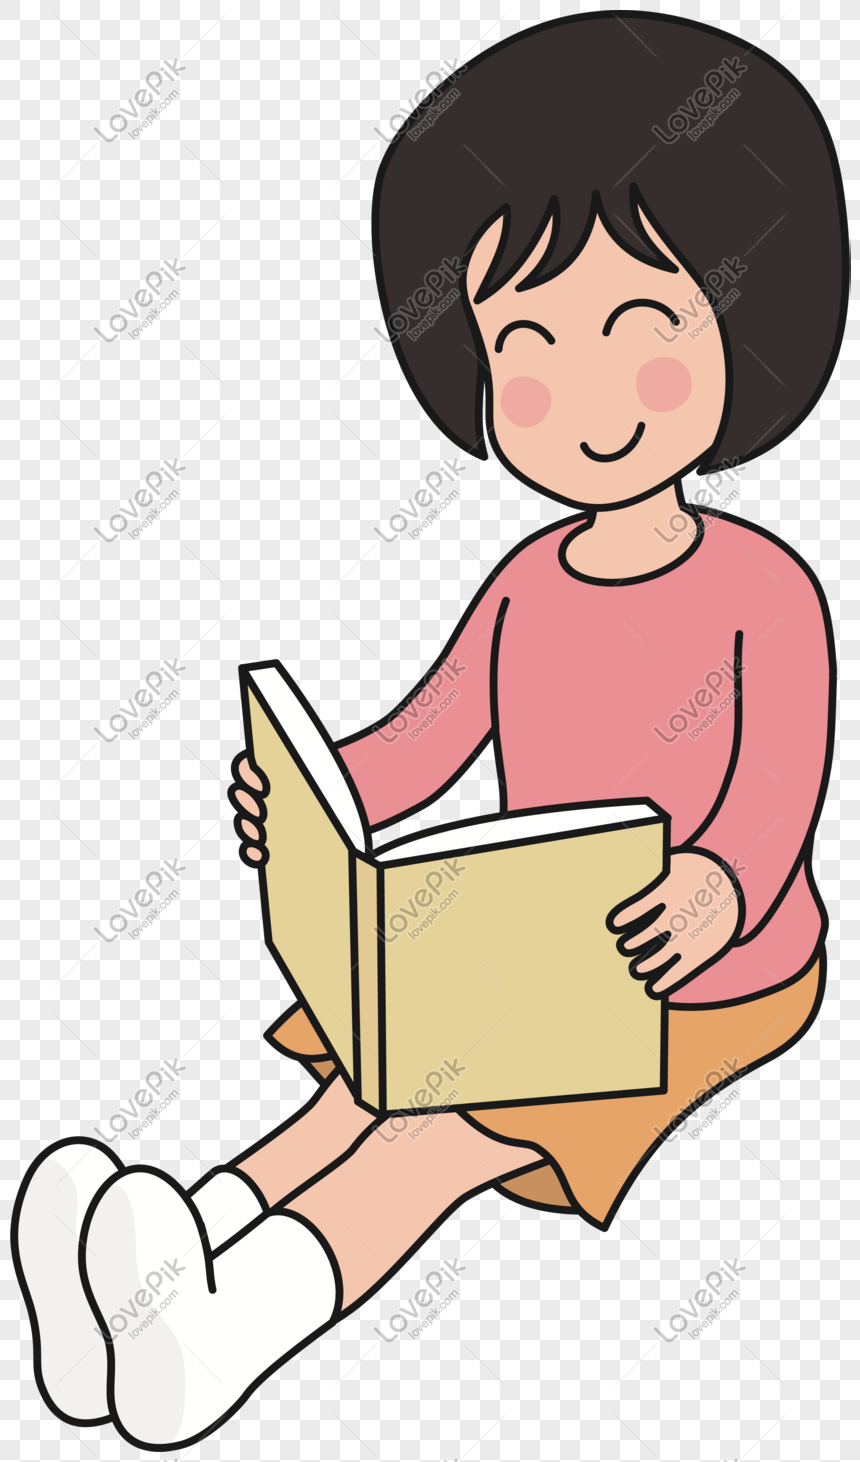 Cô gái tóc ngắn đọc sách: Nét đẹp của cô gái tóc ngắn càng thêm rực rỡ khi cô đang đọc một cuốn sách thật sự quý giá. Hãy cùng tìm hiểu về niềm đam mê đọc sách và những giá trị mà nó mang lại.